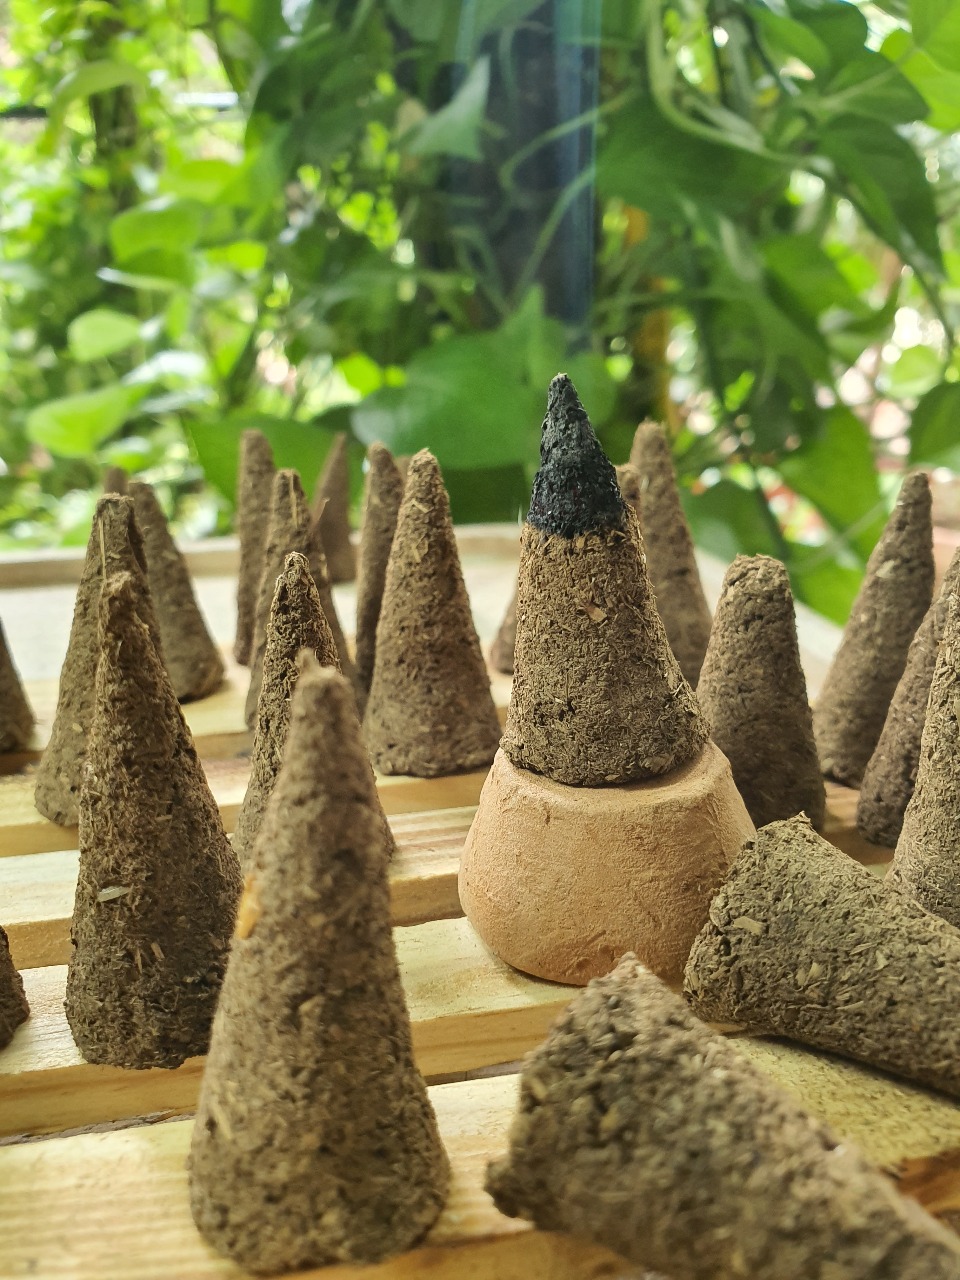 Incense cones